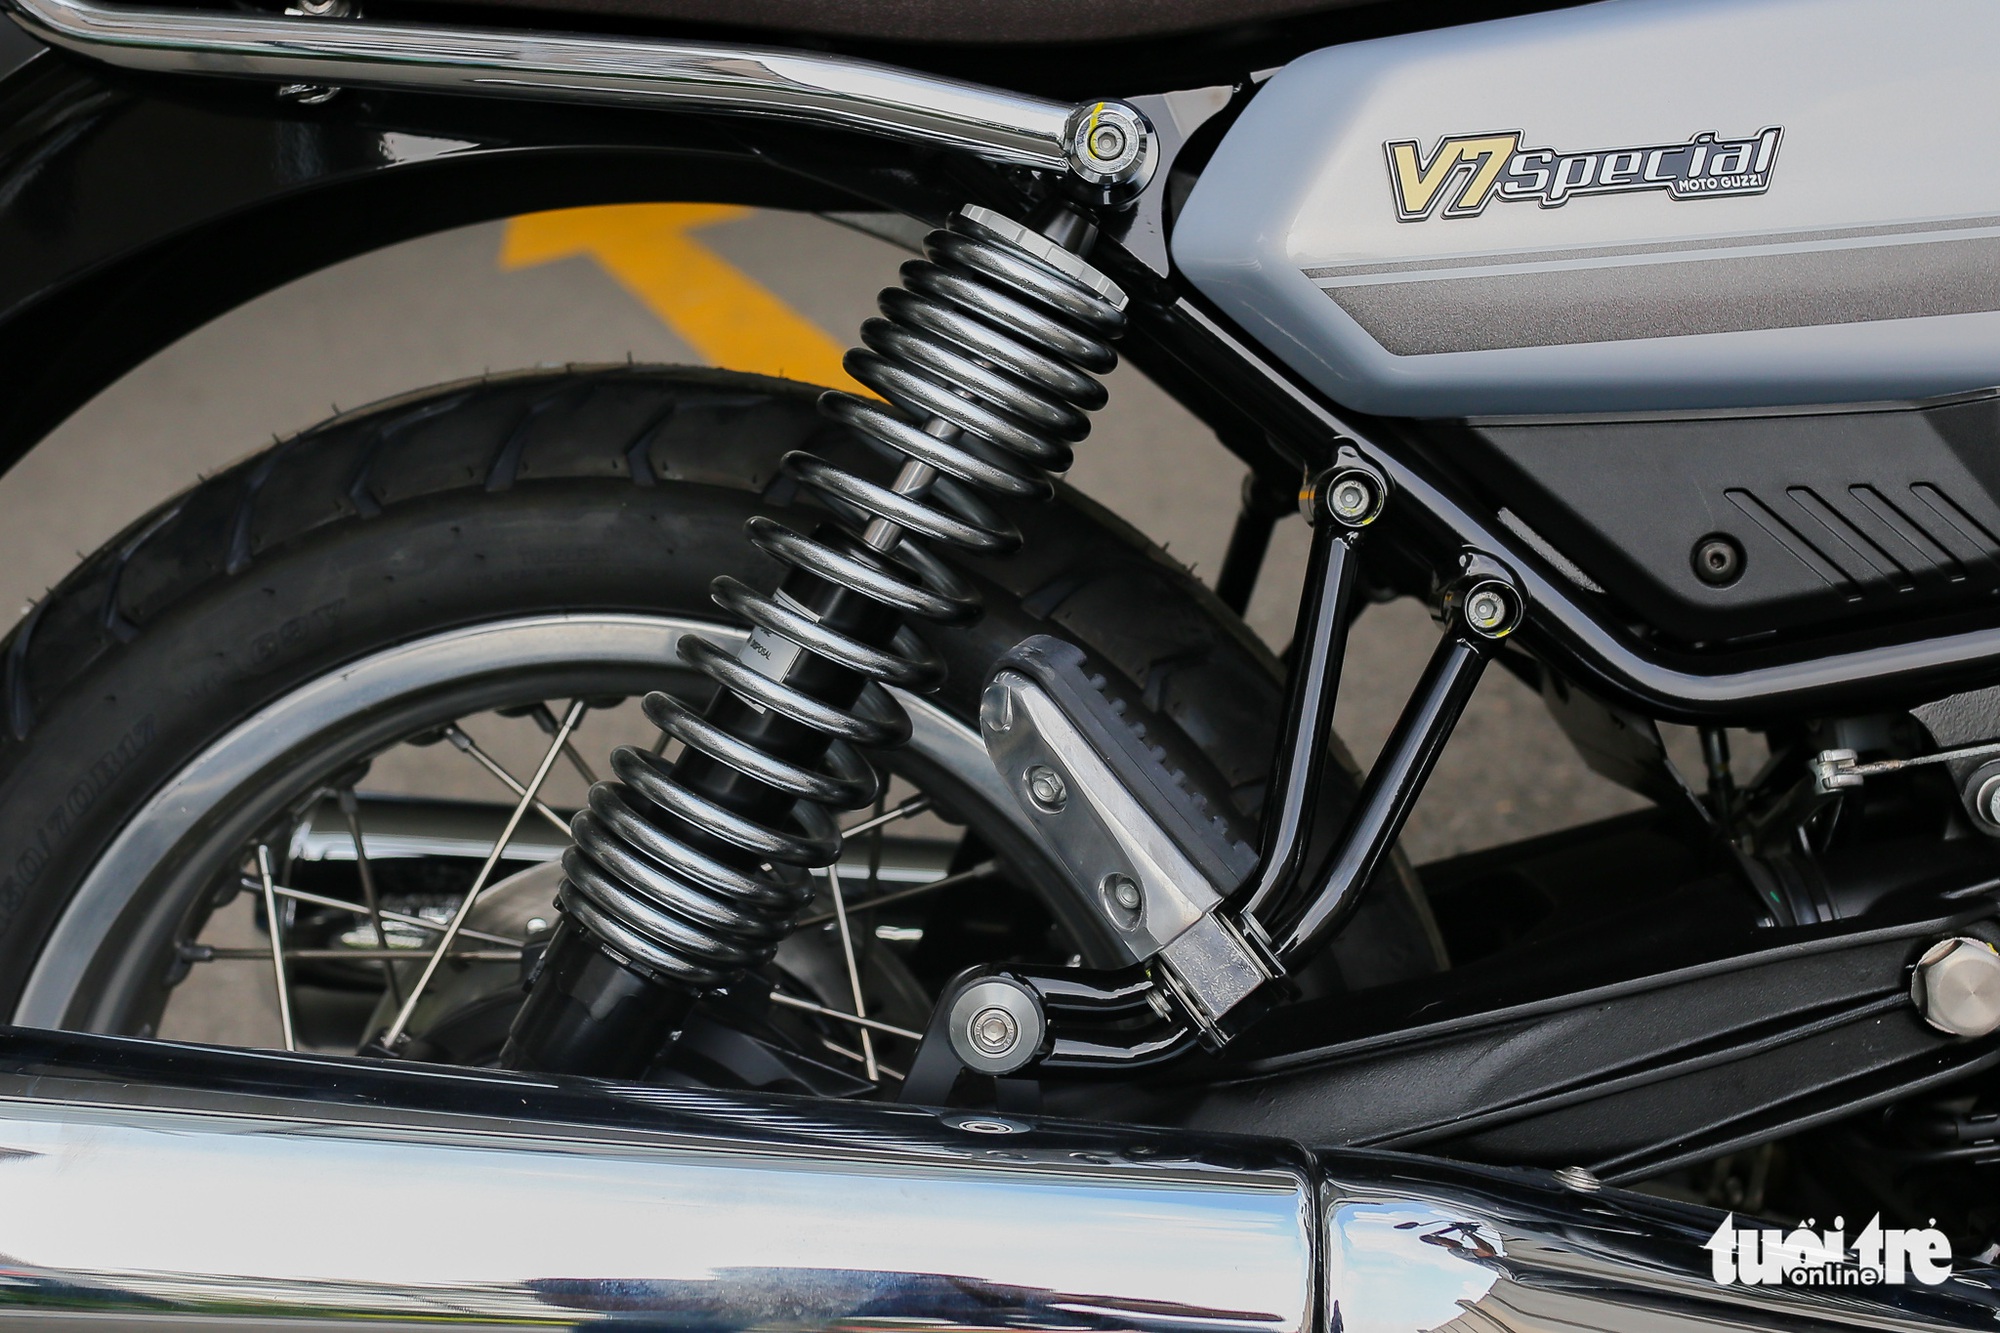 Chi tiết Moto Guzzi V7 Special 850 giá hơn 400 triệu đồng tại Việt Nam - Ảnh 12.